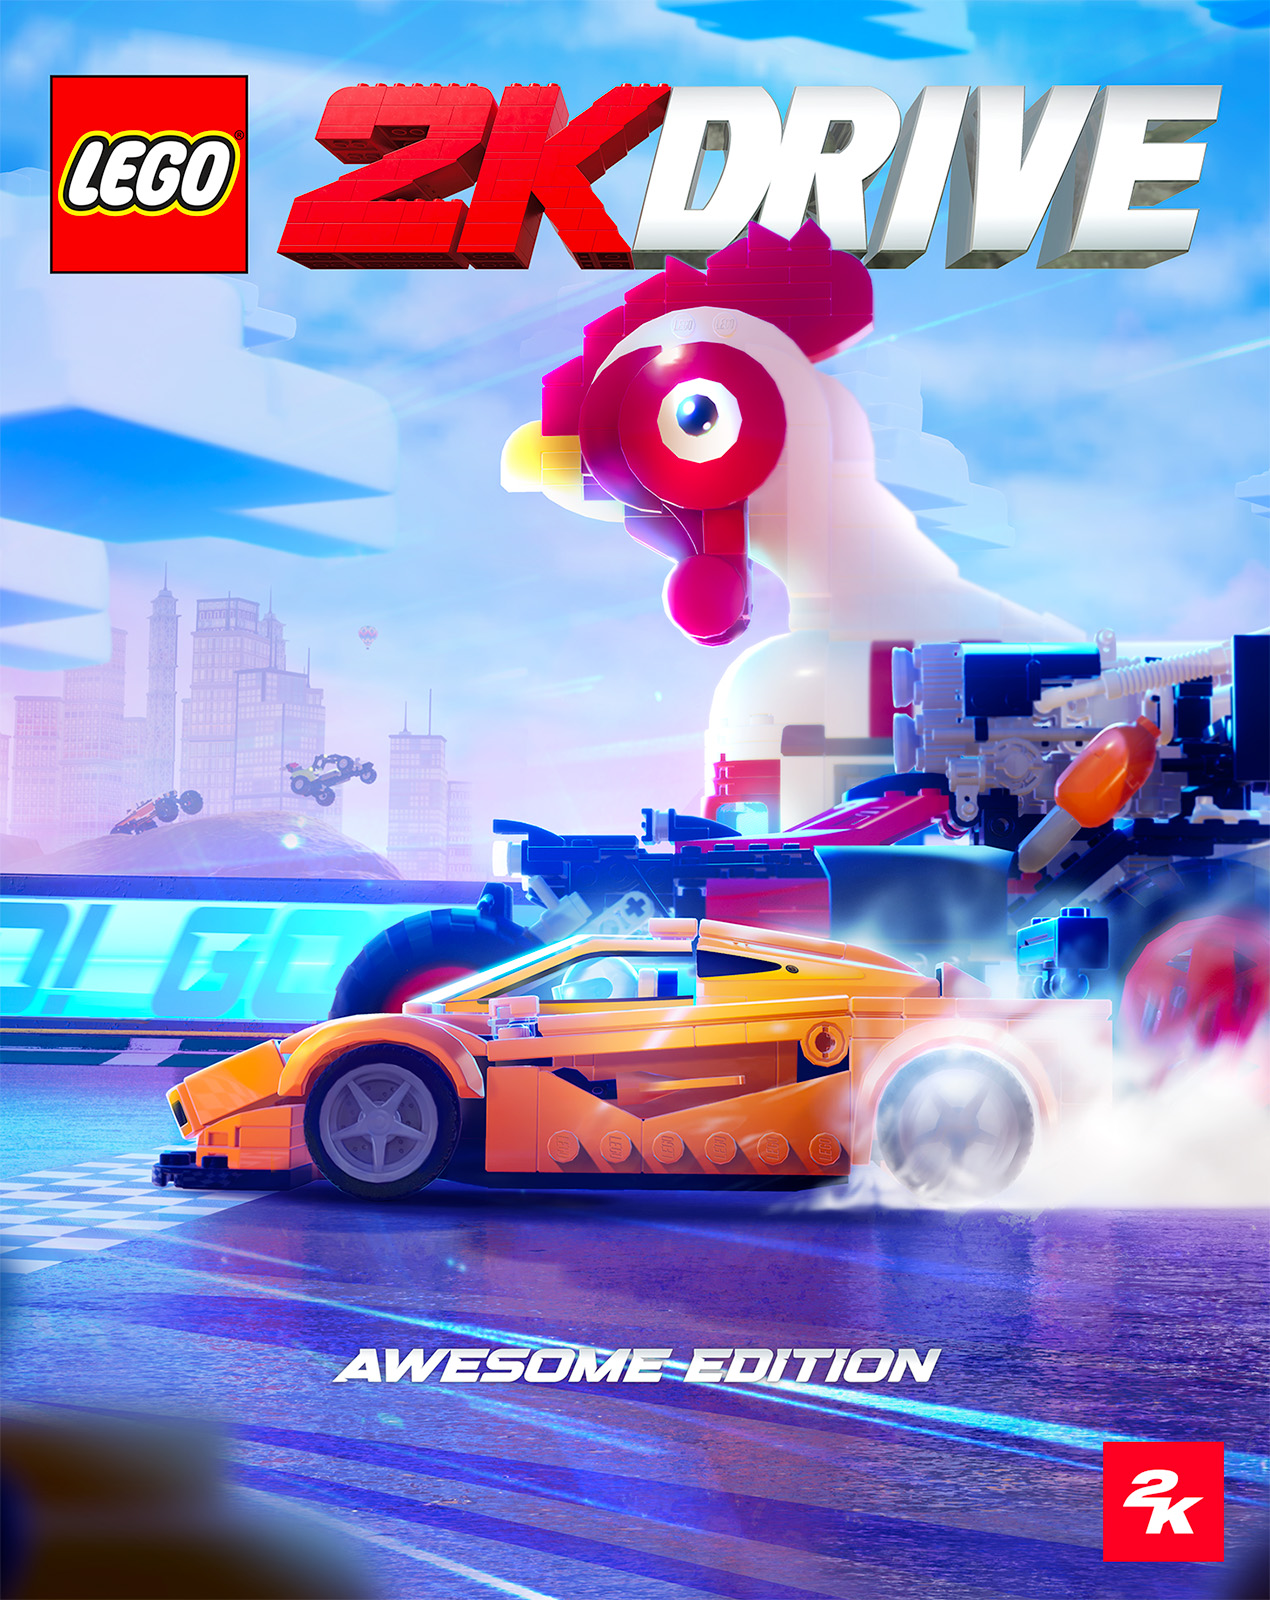 LEGO 2K ড্রাইভ: পরবর্তী LEGO ভিডিও গেমটি 19 মে, 2023-এর জন্য ঘোষণা করা হয়েছে